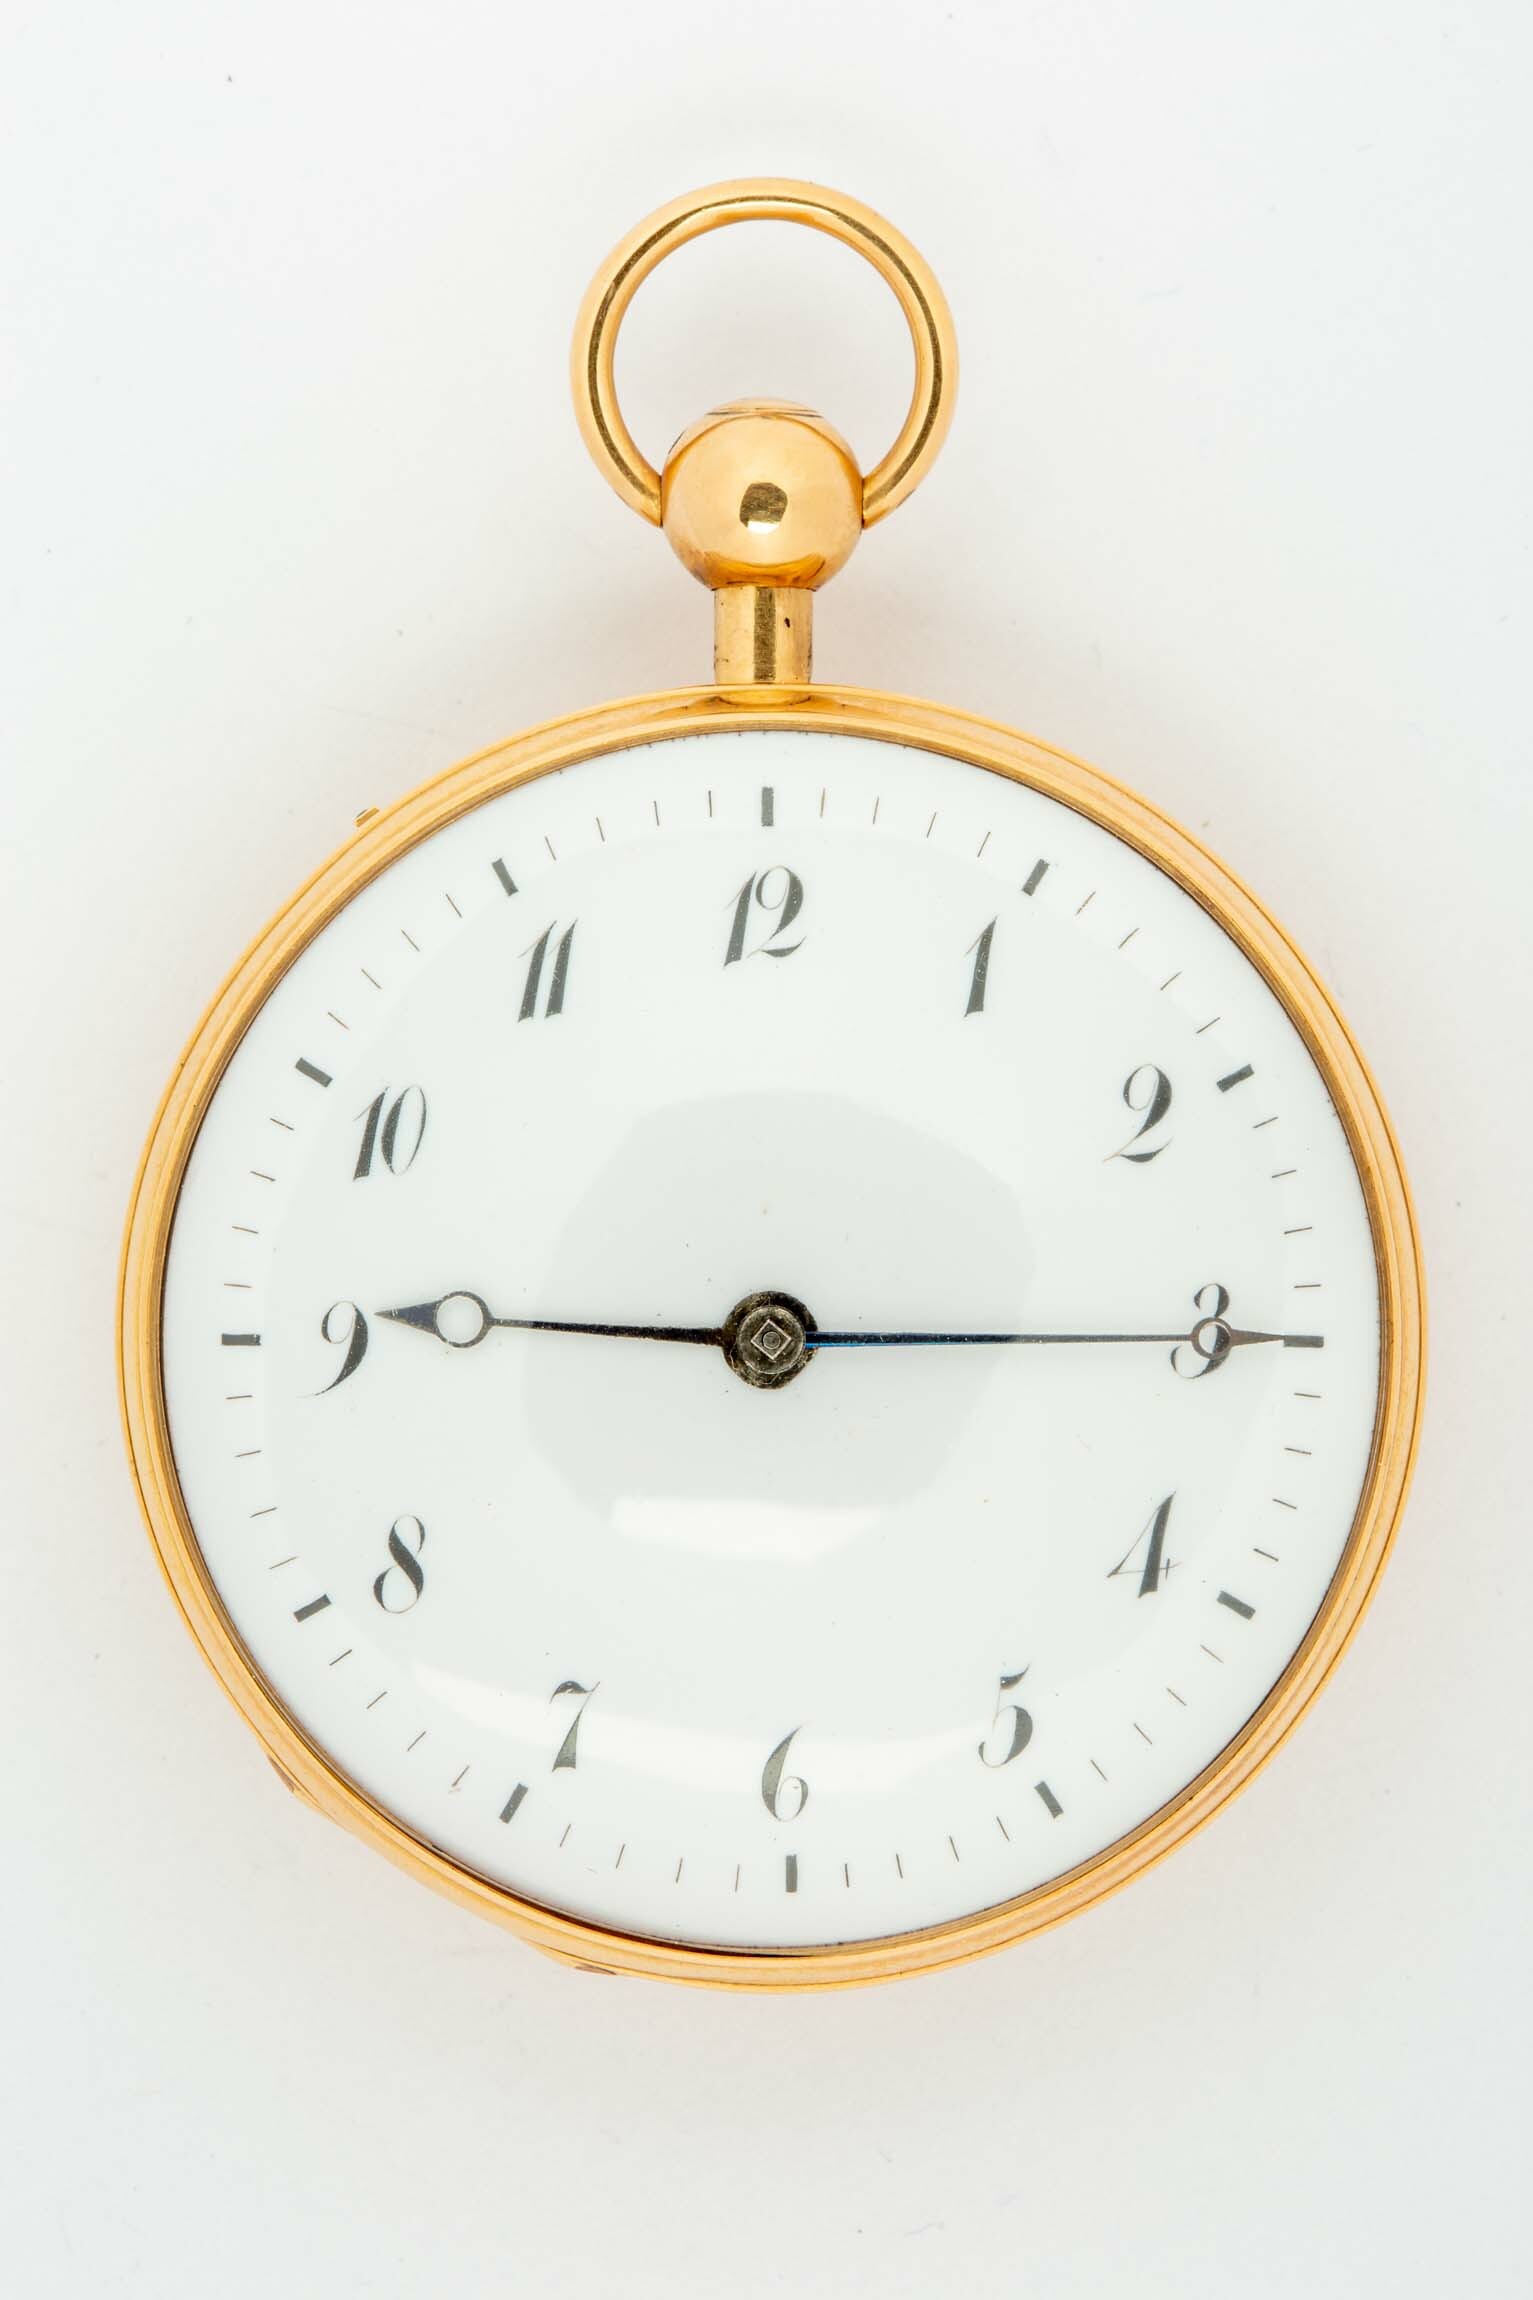 Taschenuhr, Berthoud, Paris, um 1800 (Deutsches Uhrenmuseum CC BY-SA)